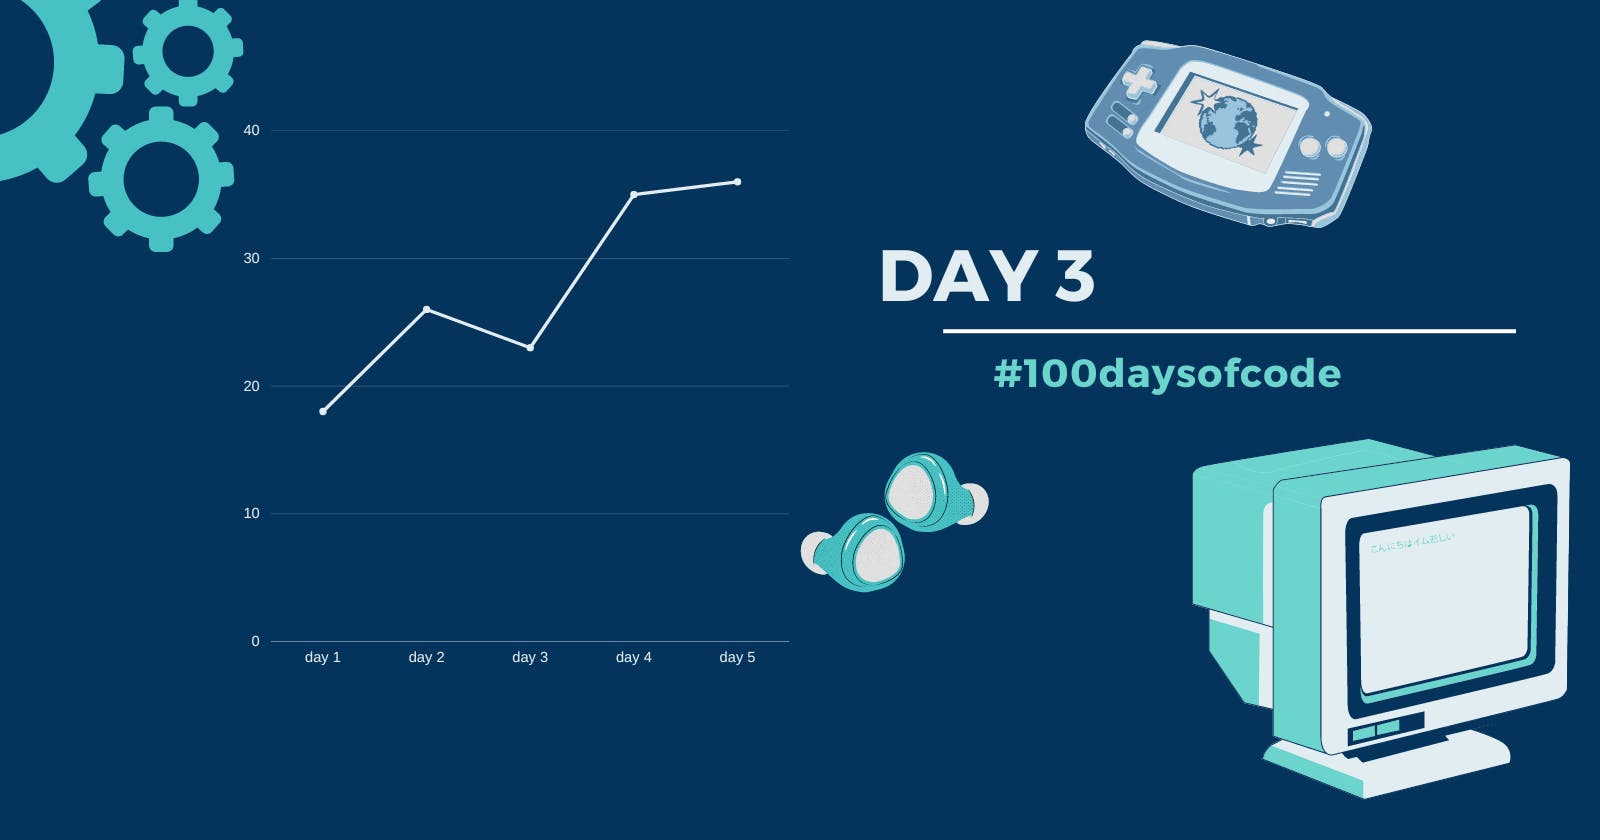 Day 3 in #100daysofcode challenge